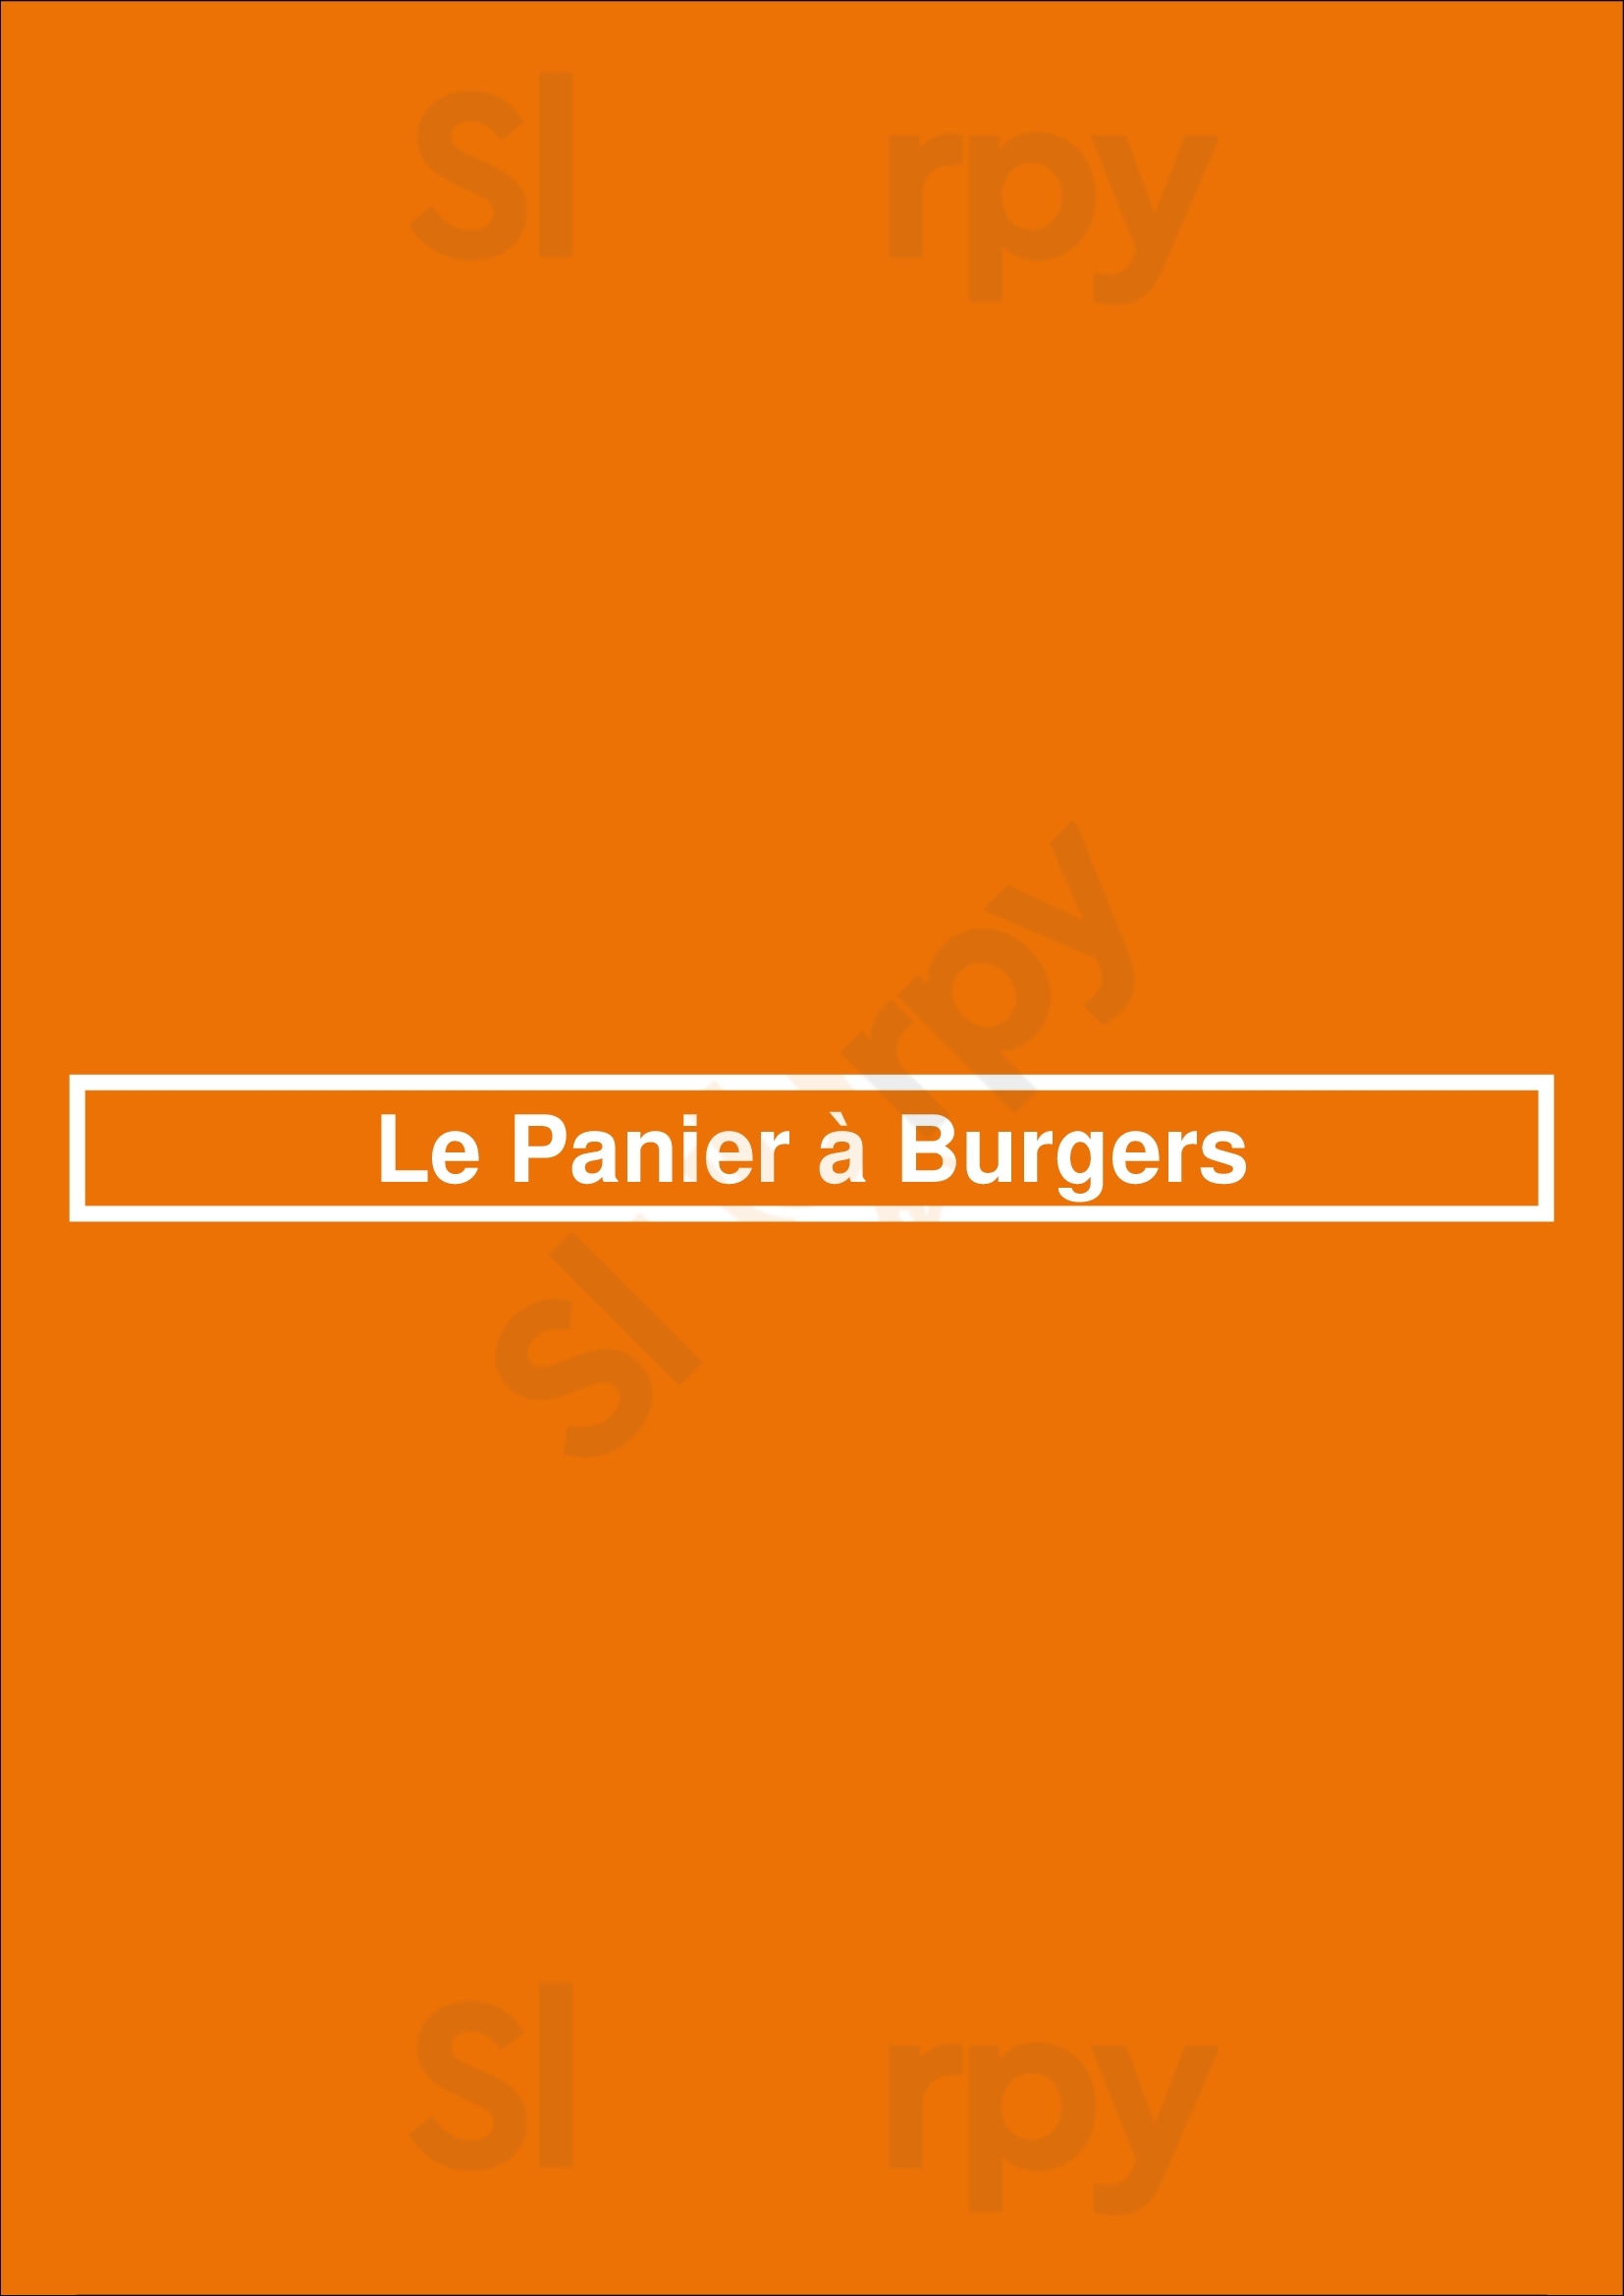 Le Panier à Burgers Marseille Menu - 1